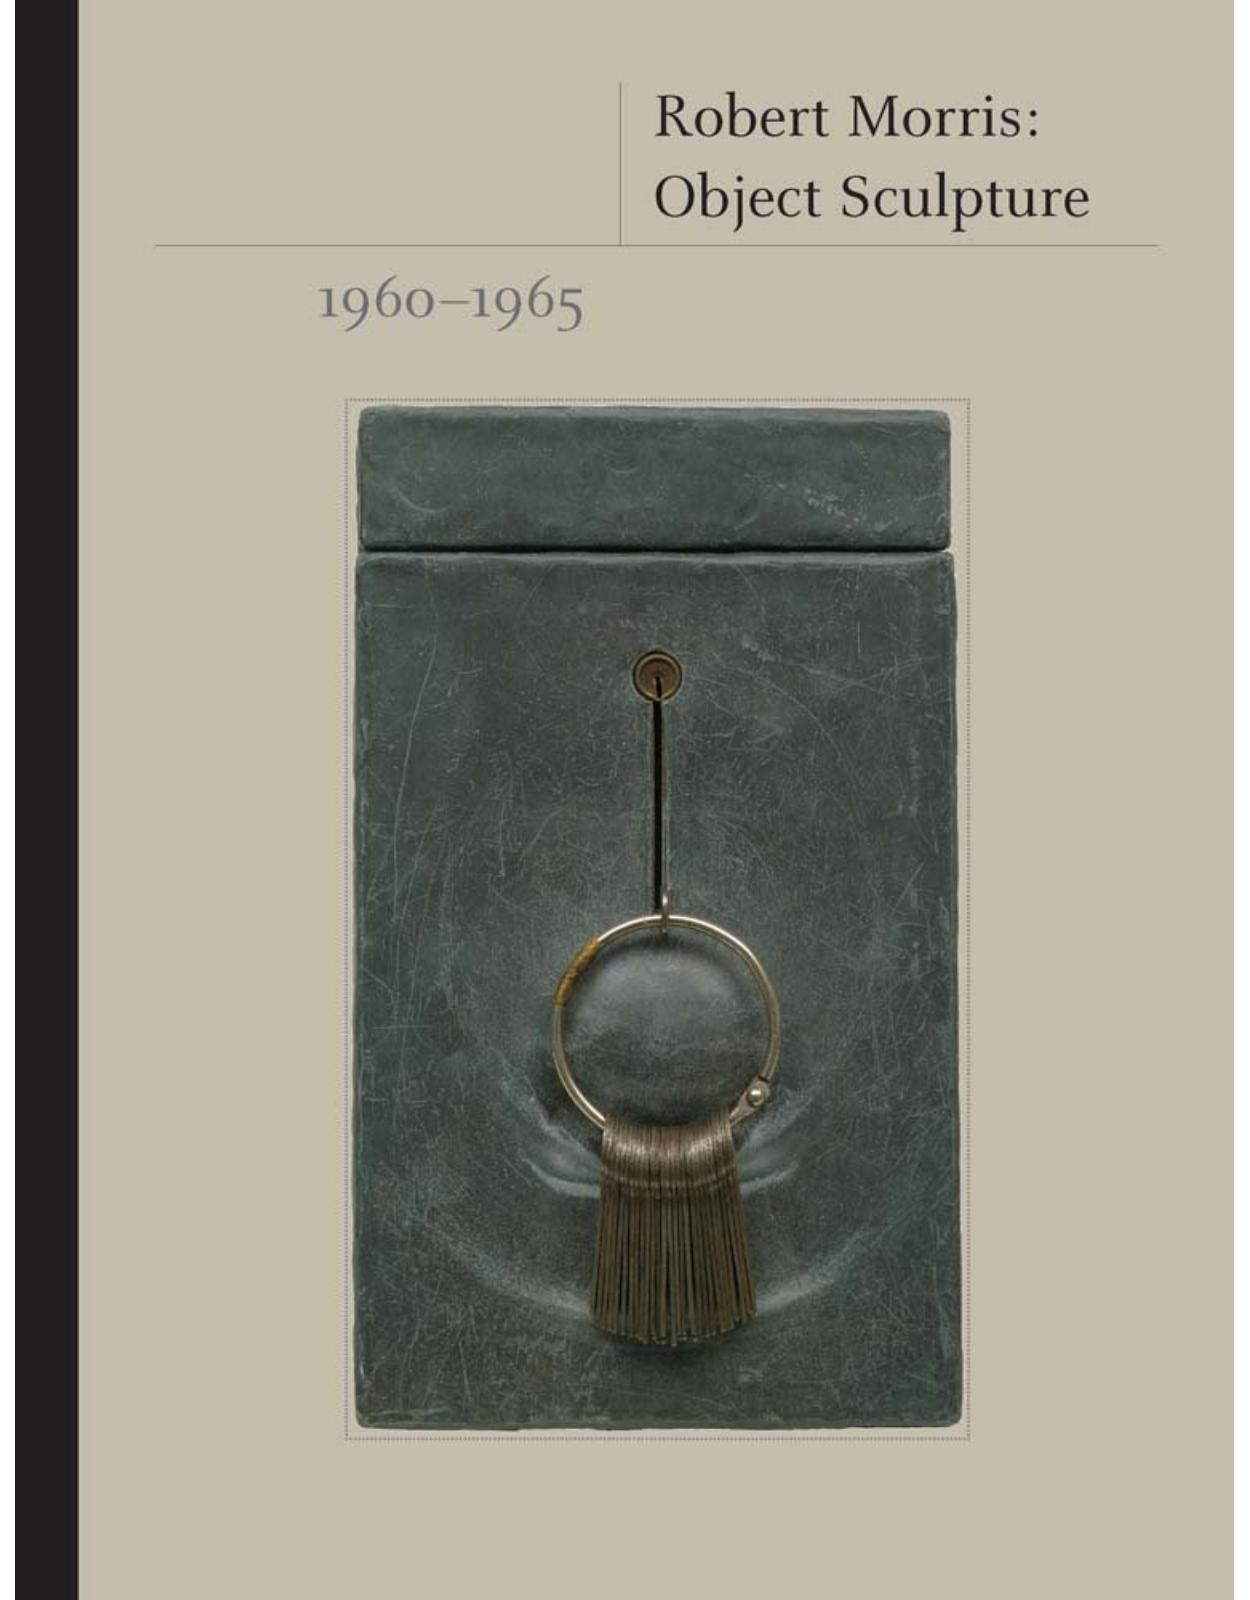 Robert Morris. Object Sculpture, 1960-1965